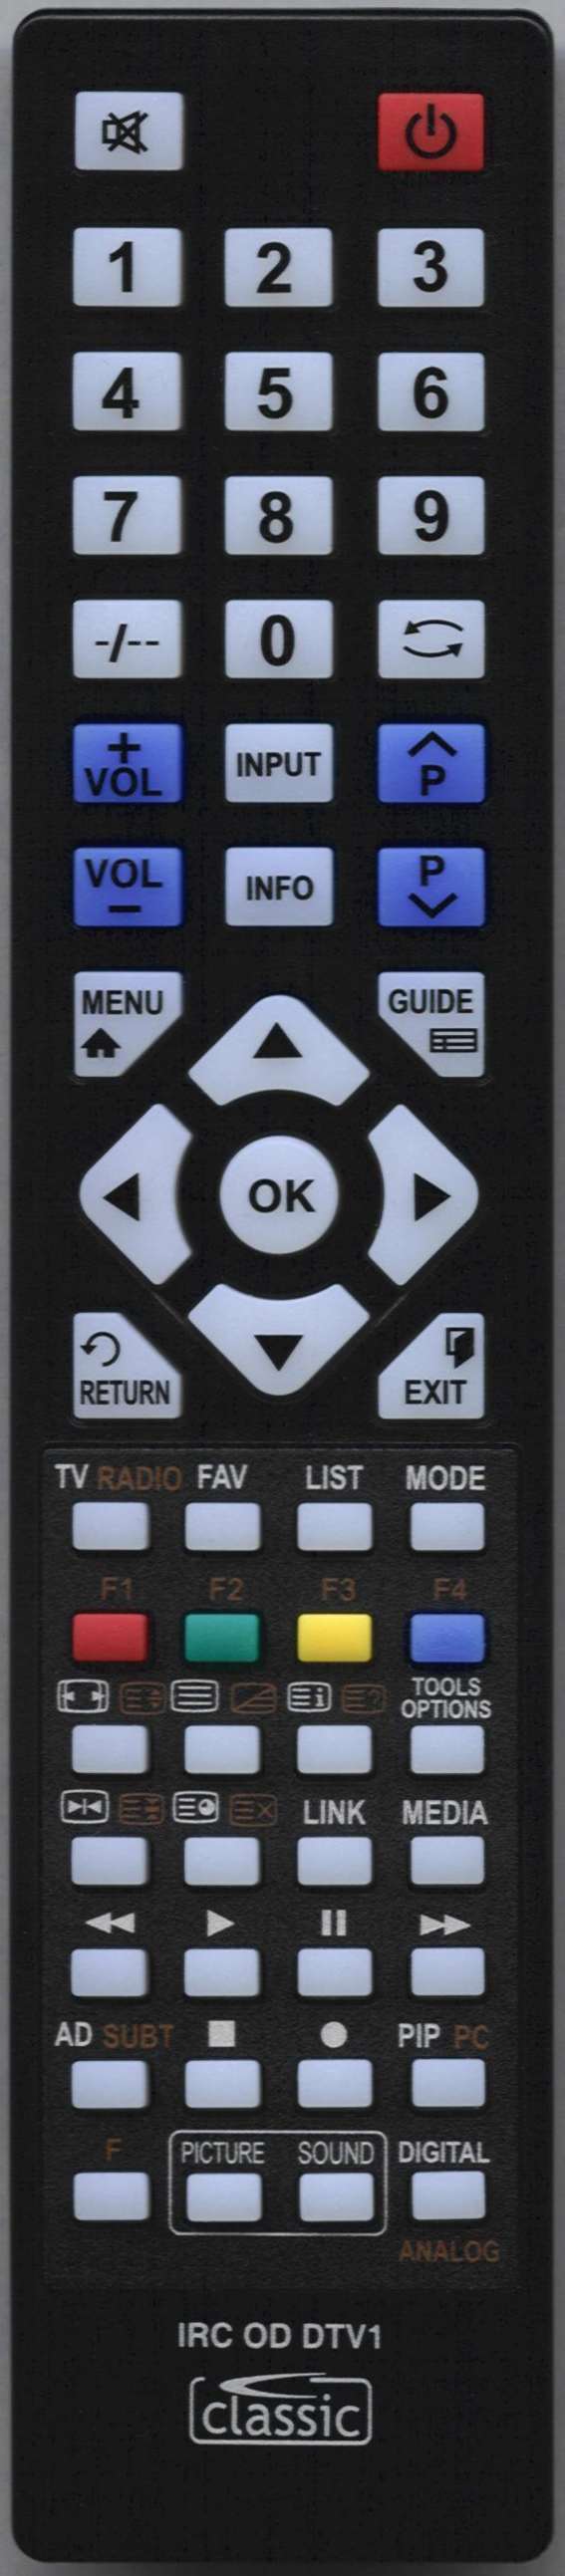 LUXOR 10127356 Remote Control Alternative